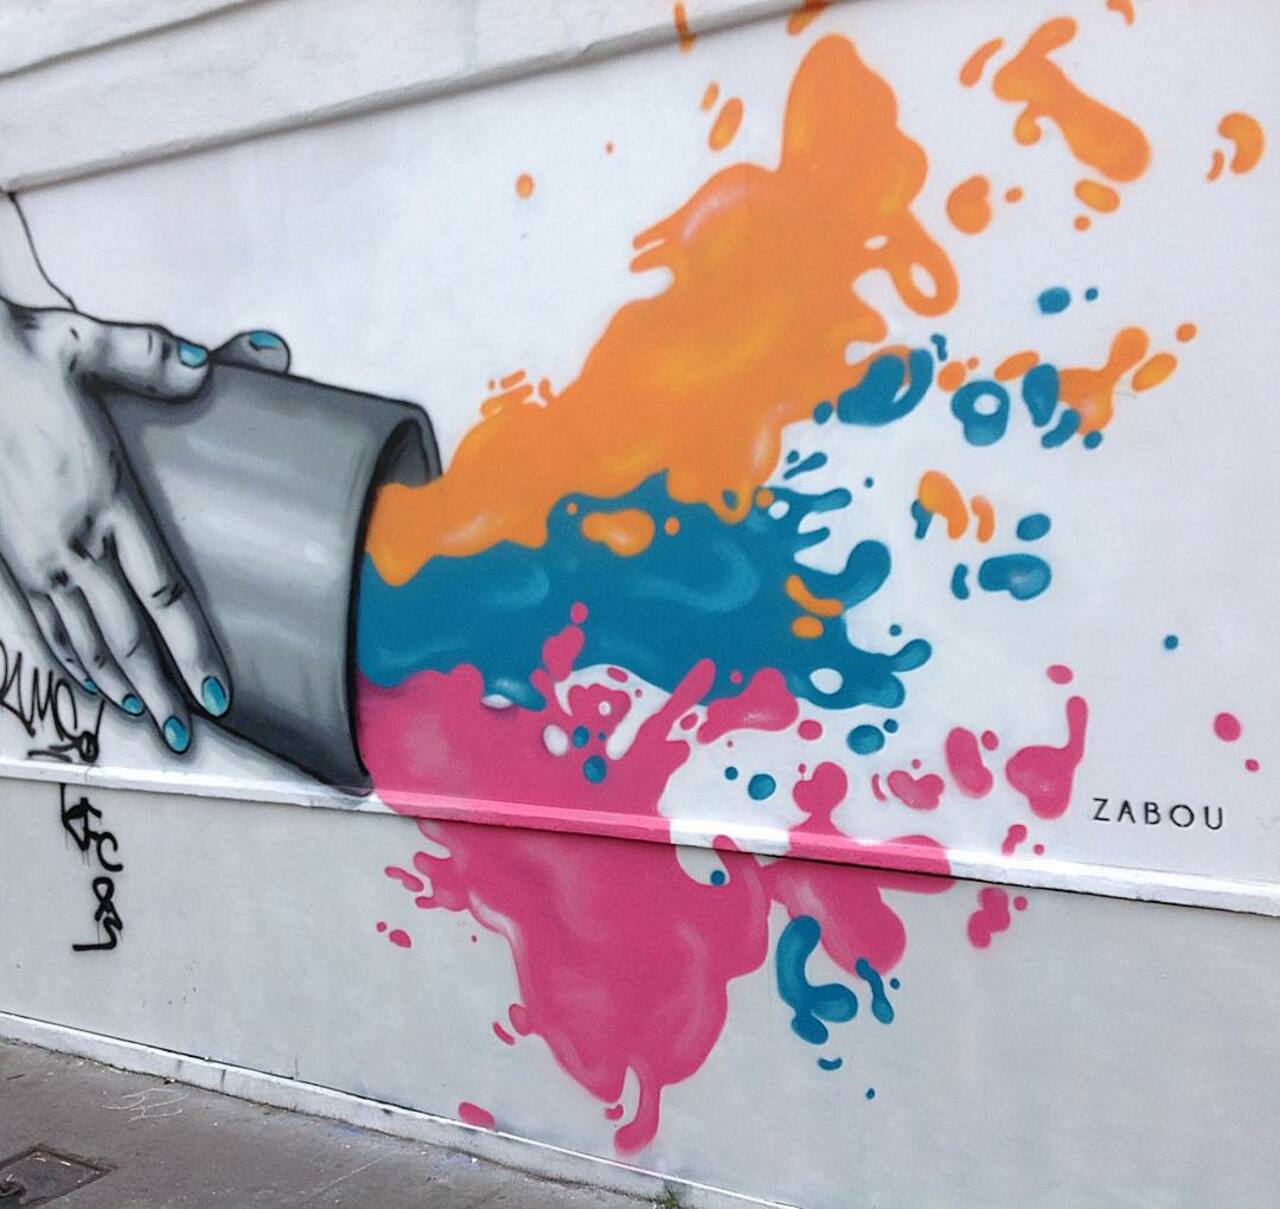 circumjacent_fr: #Paris #graffiti photo by stefetlinda http://ift.tt/1Kgbtic #StreetArt http://t.co/skDS1mMfcd